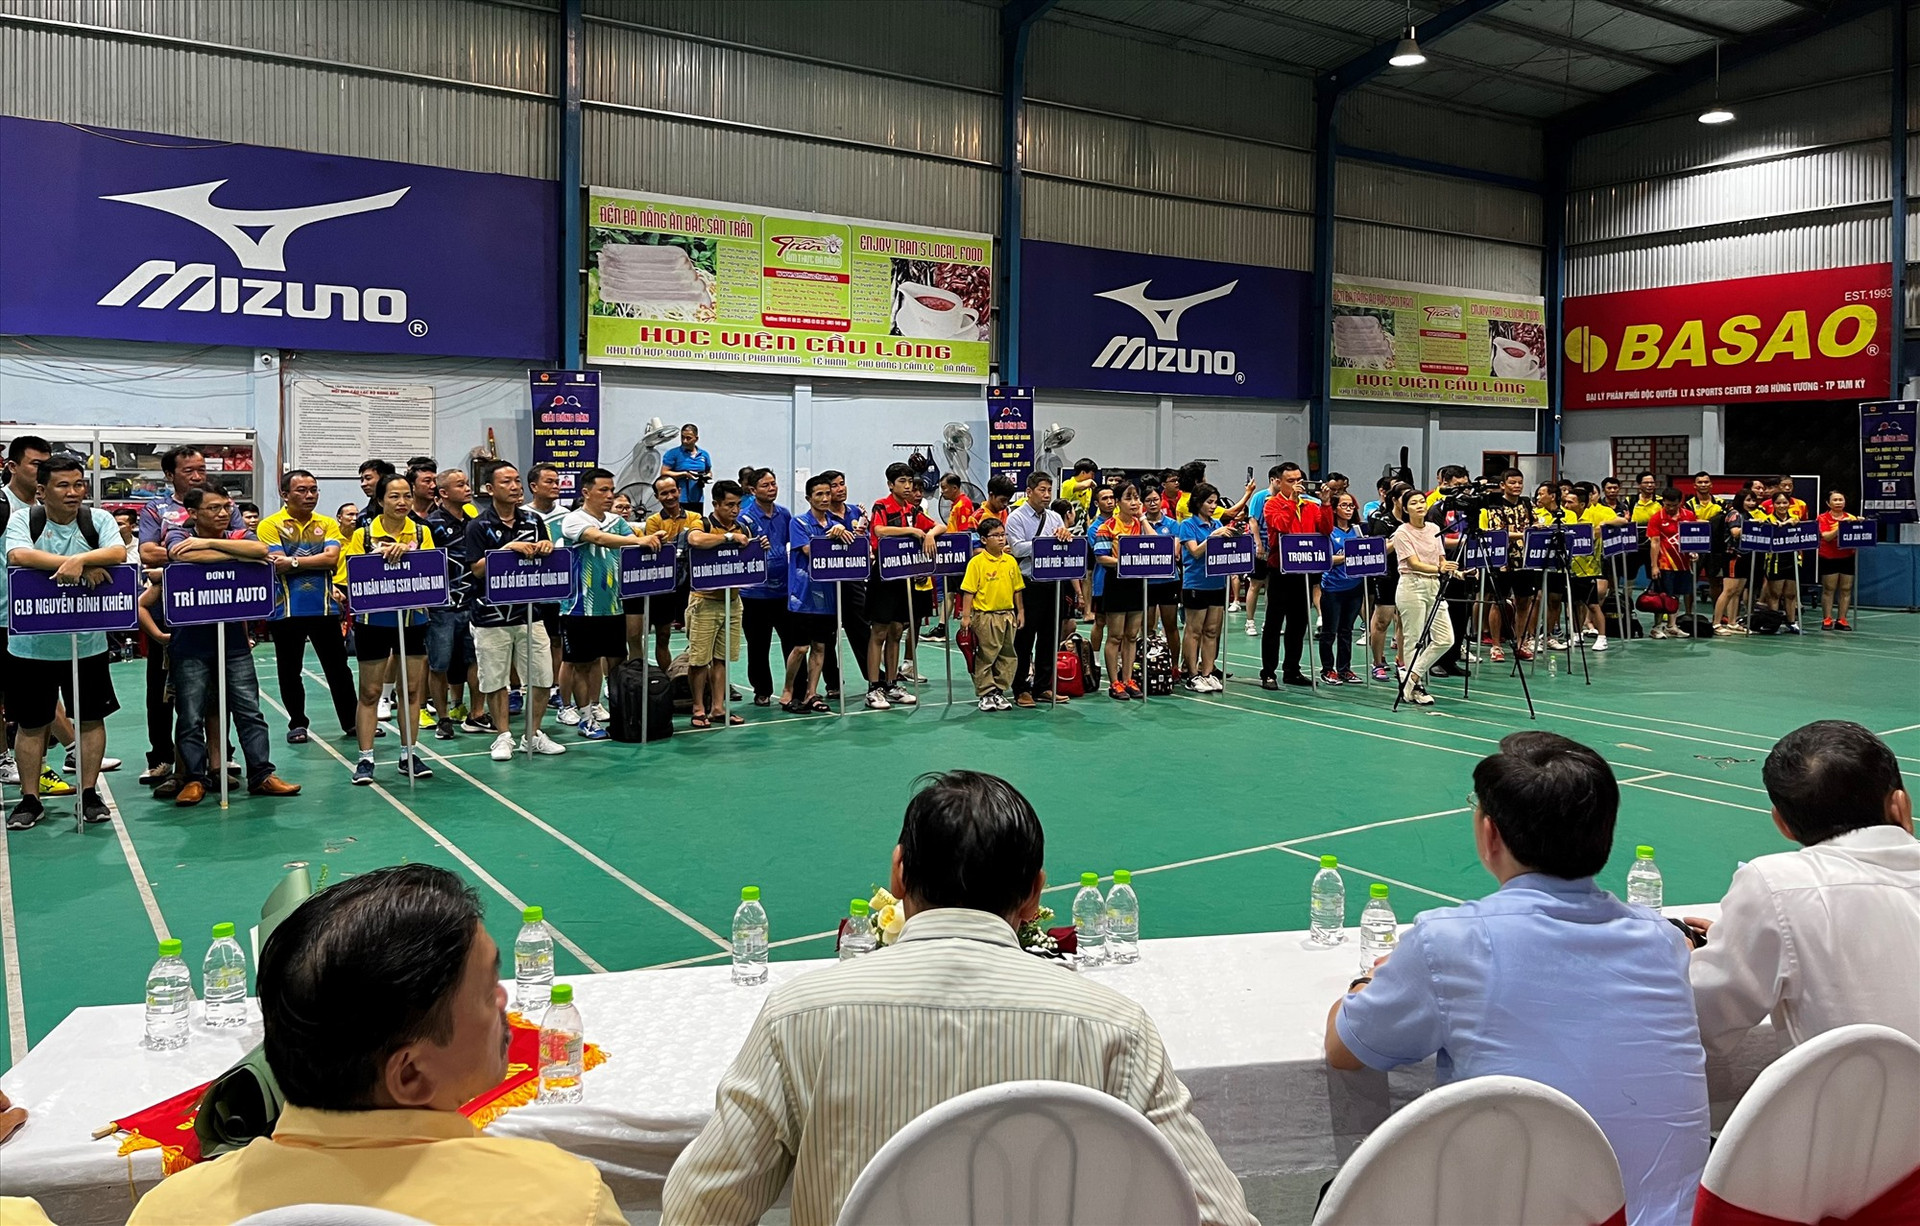 Giải thu hút gần 300 tay vợt đến từ 32 câu lạc bộ trong và ngoài tỉnh tham gia. Ảnh: T.V